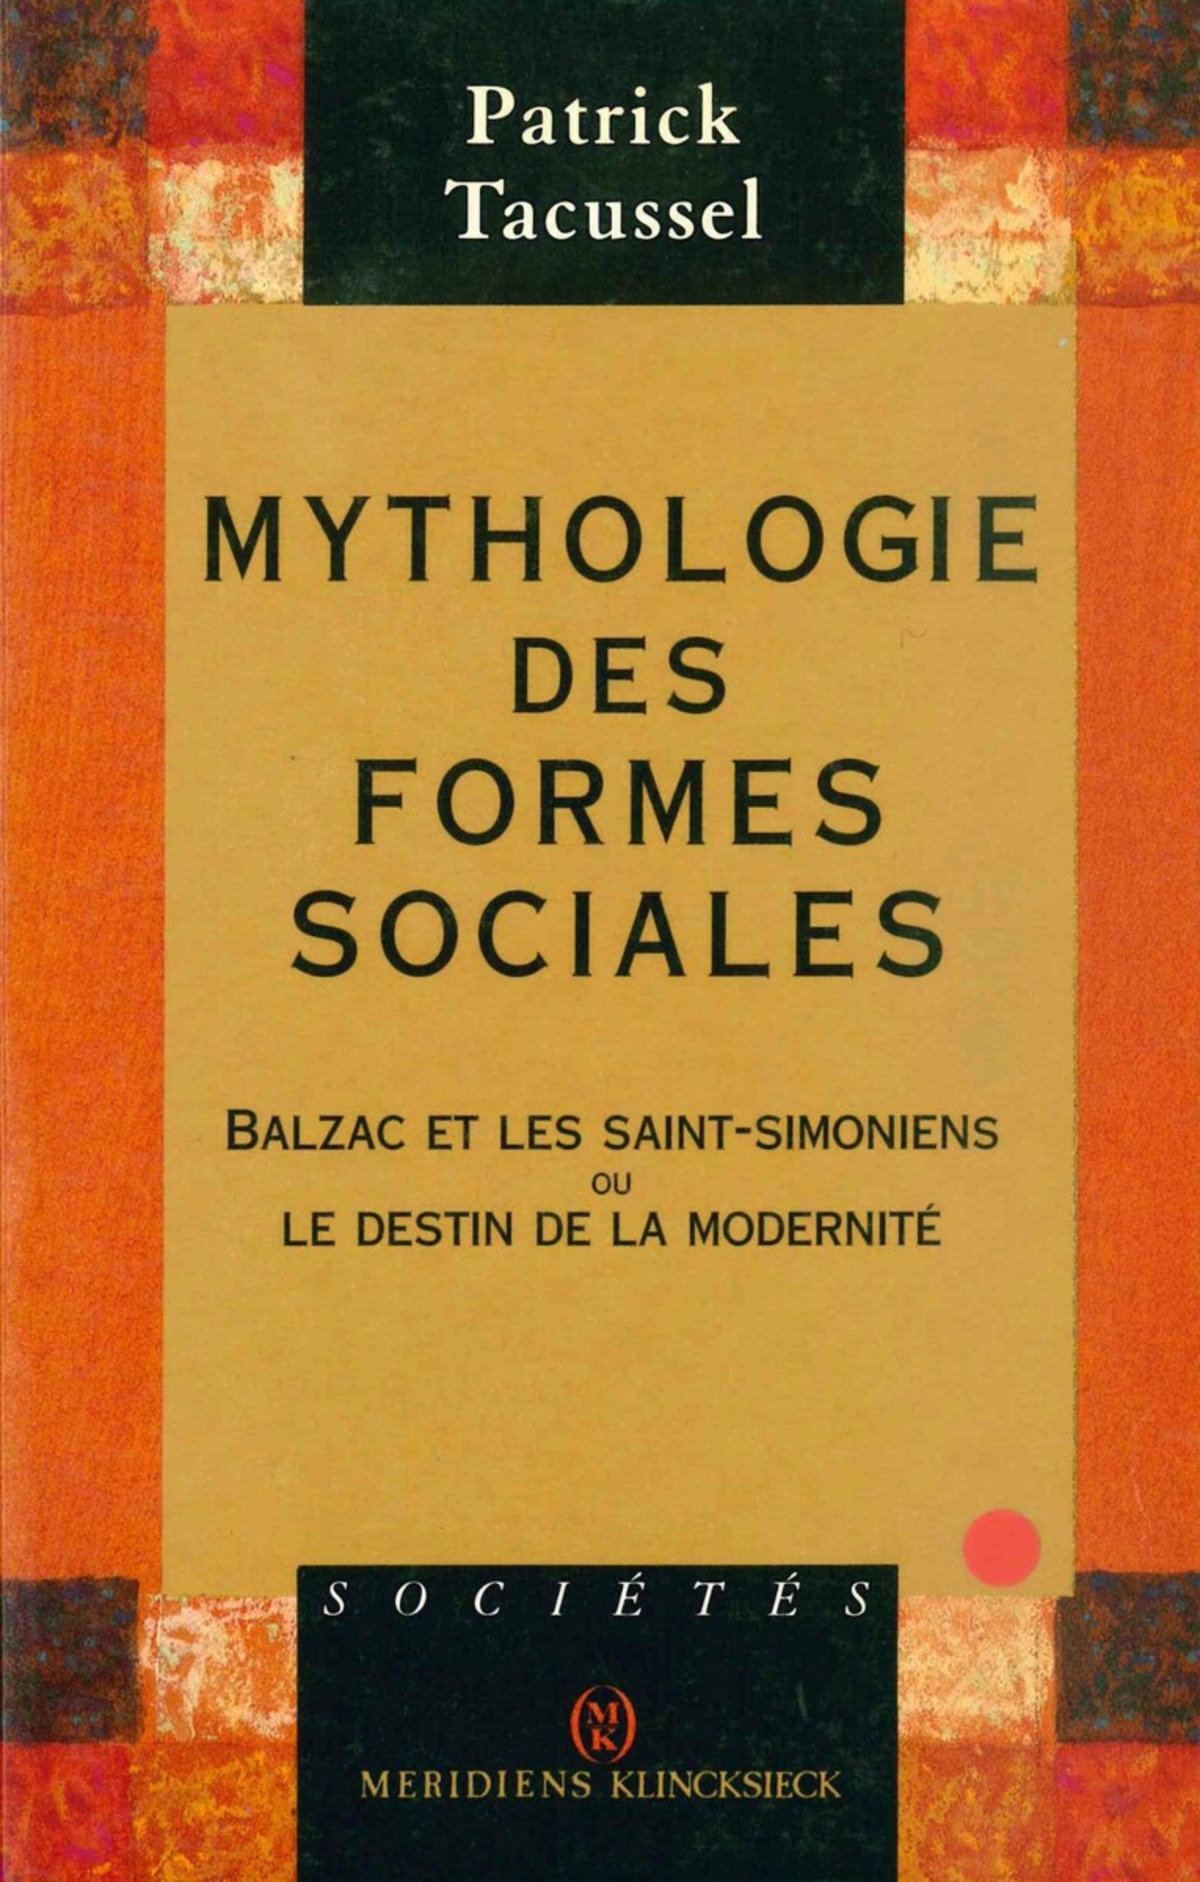 Mythologie des formes sociales